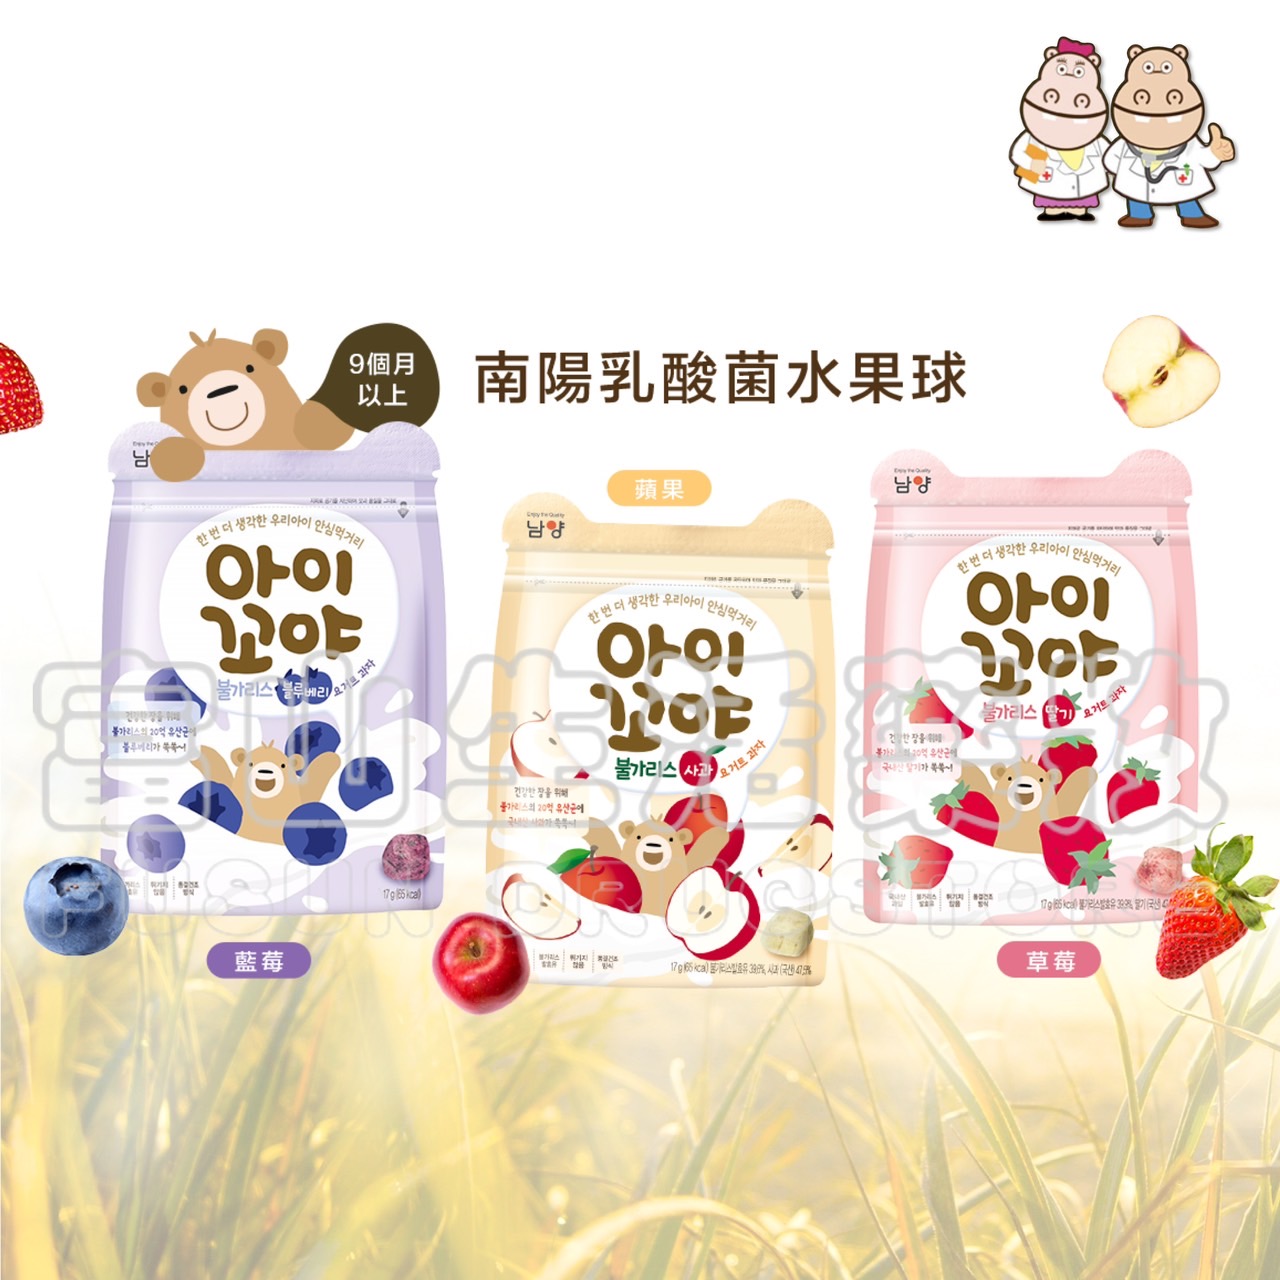 남양南陽XO 乳酸菌水果球 藍莓/蘋果/草莓【富山】9個月以上可以吃